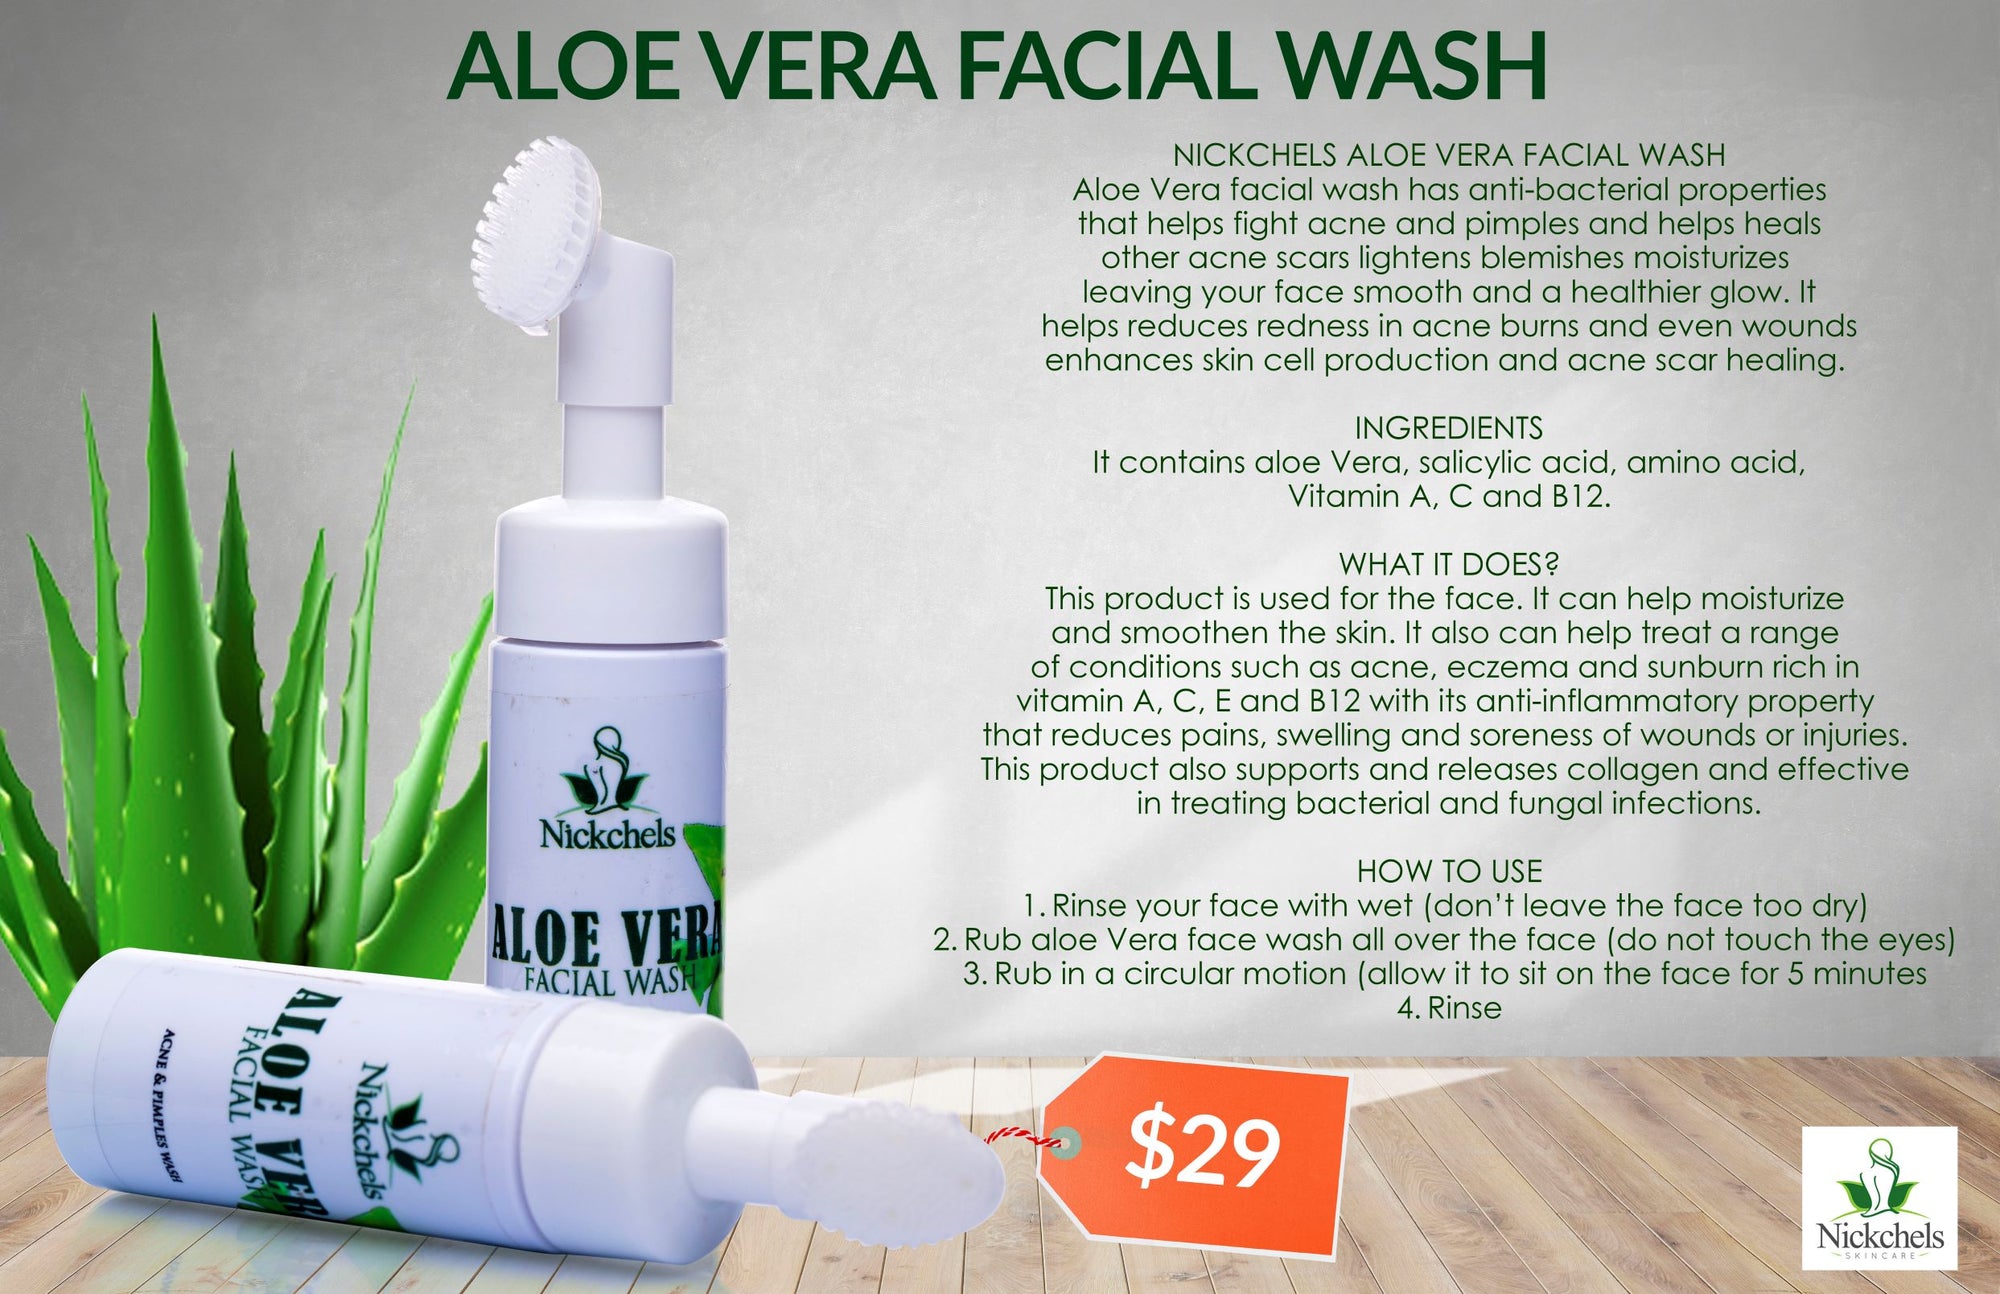 Aloe vera facial wash